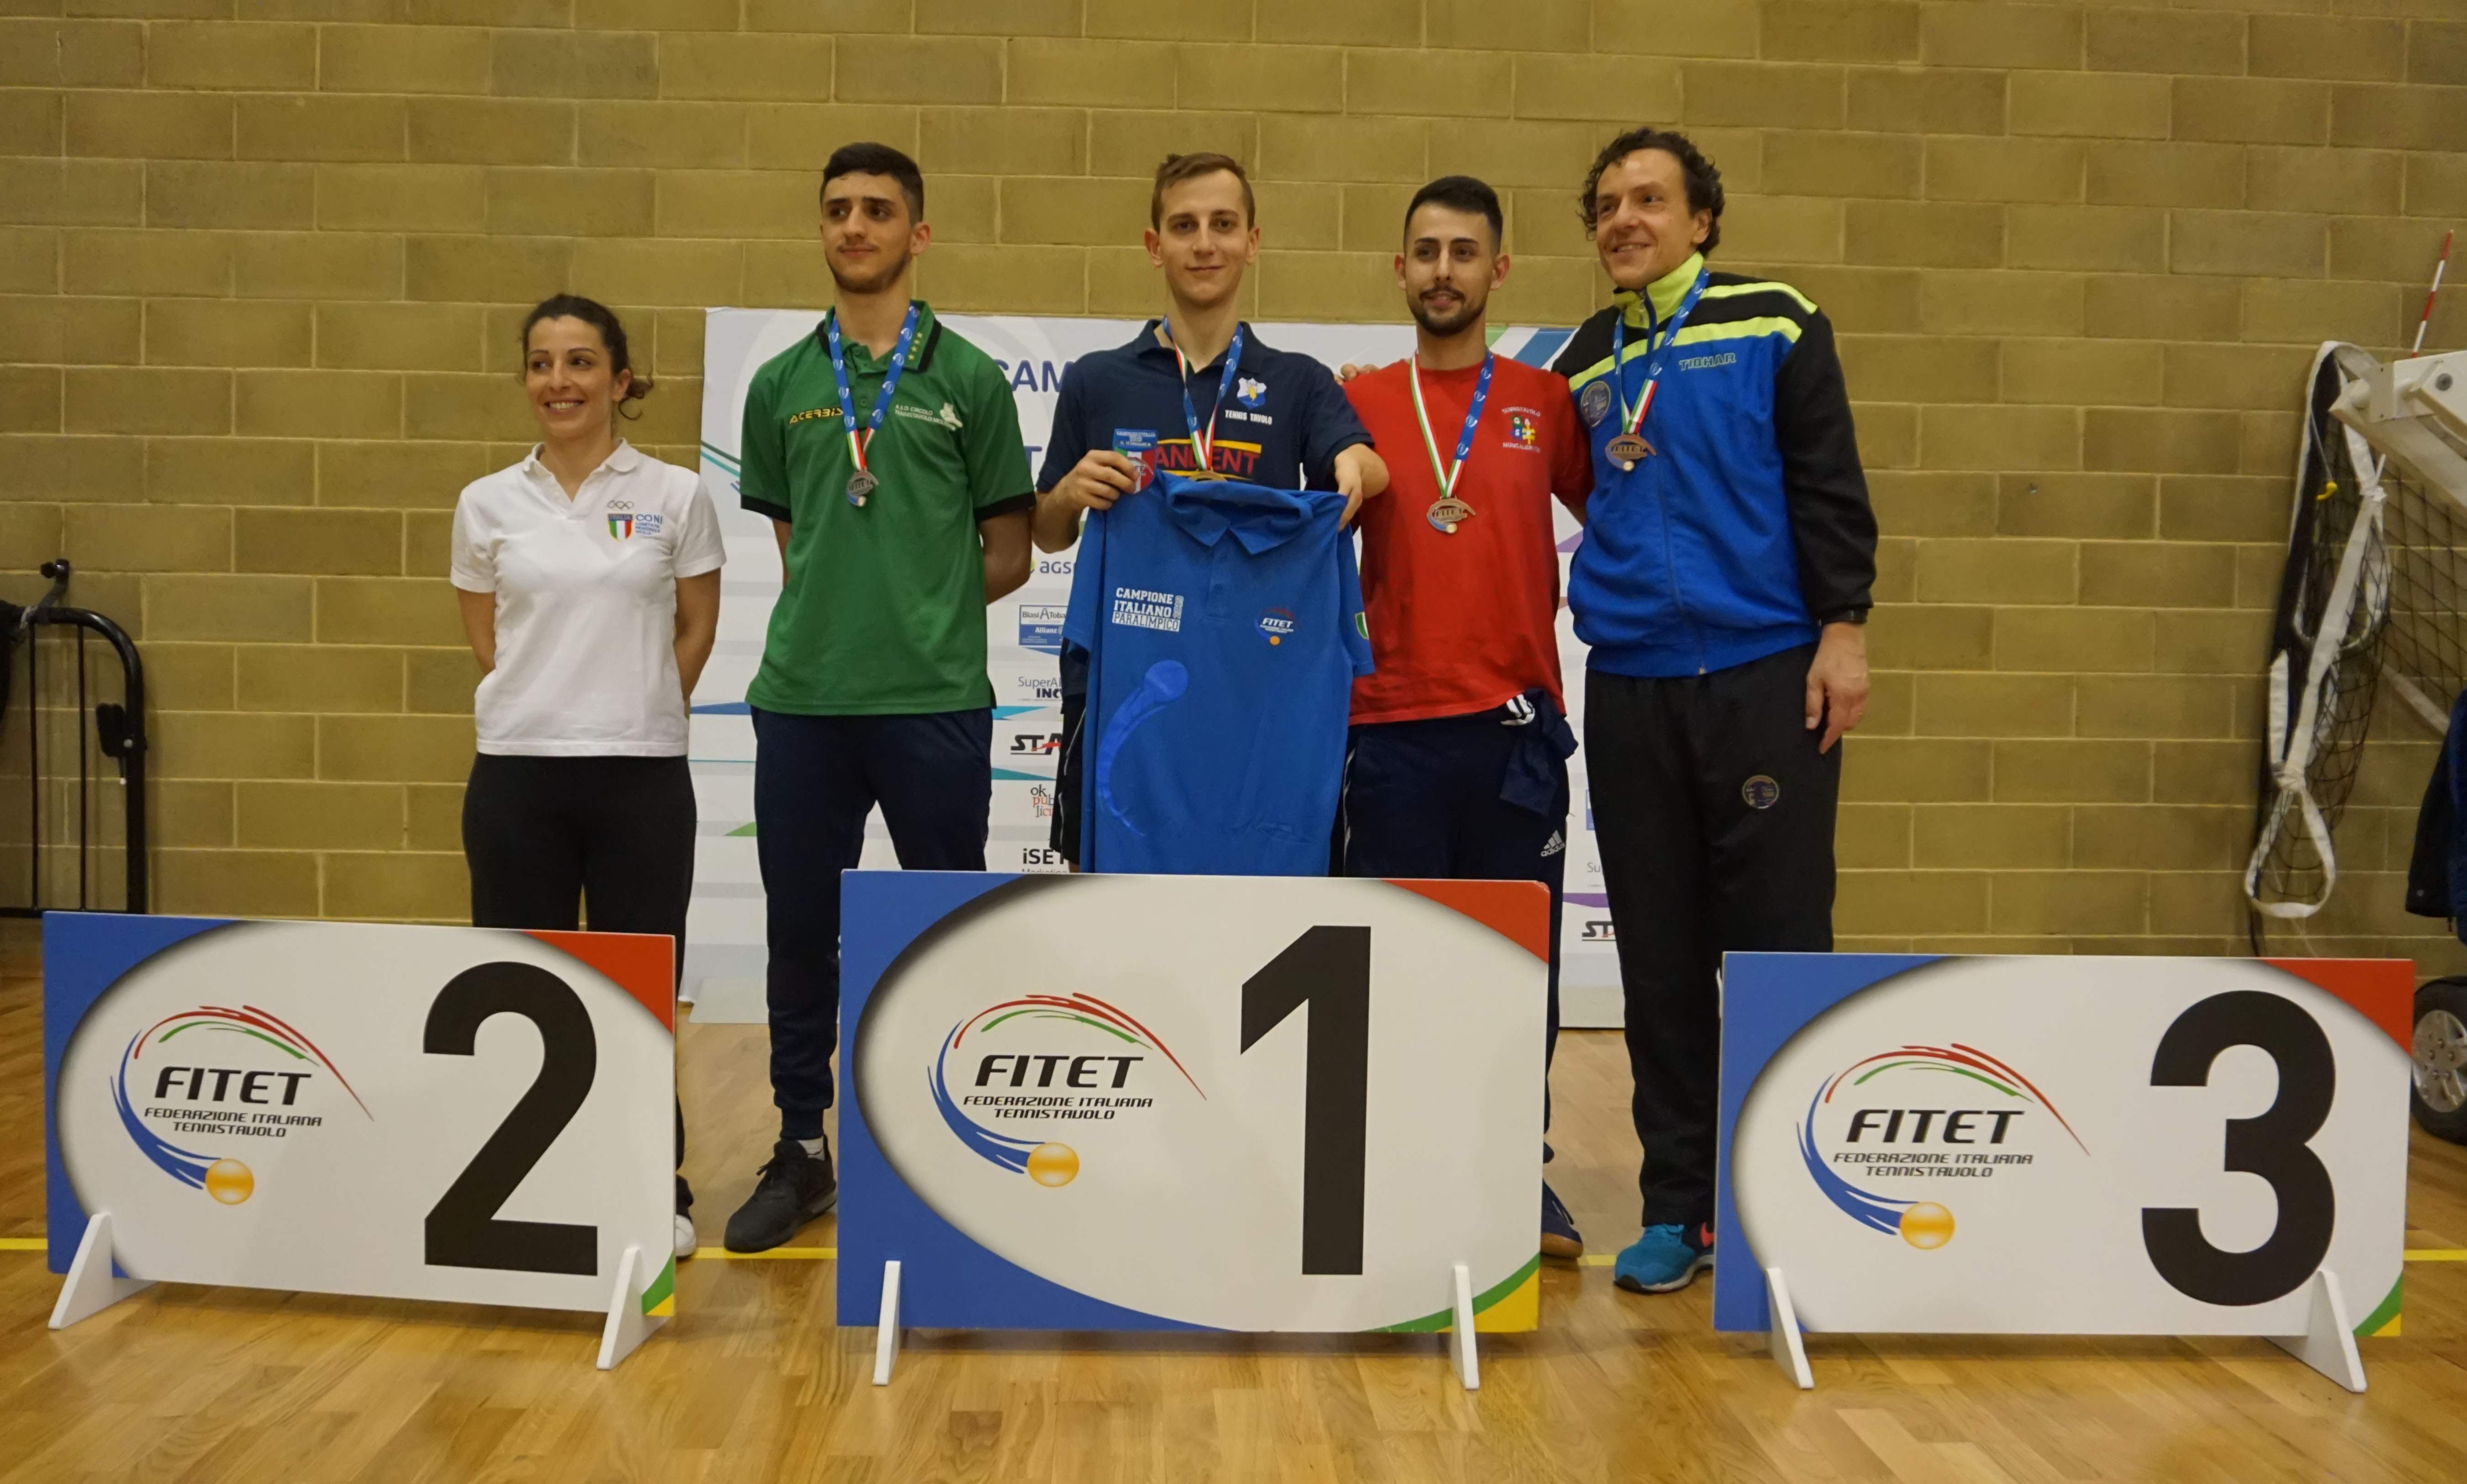 Podio singolare maschile classe 10 Verona 2019